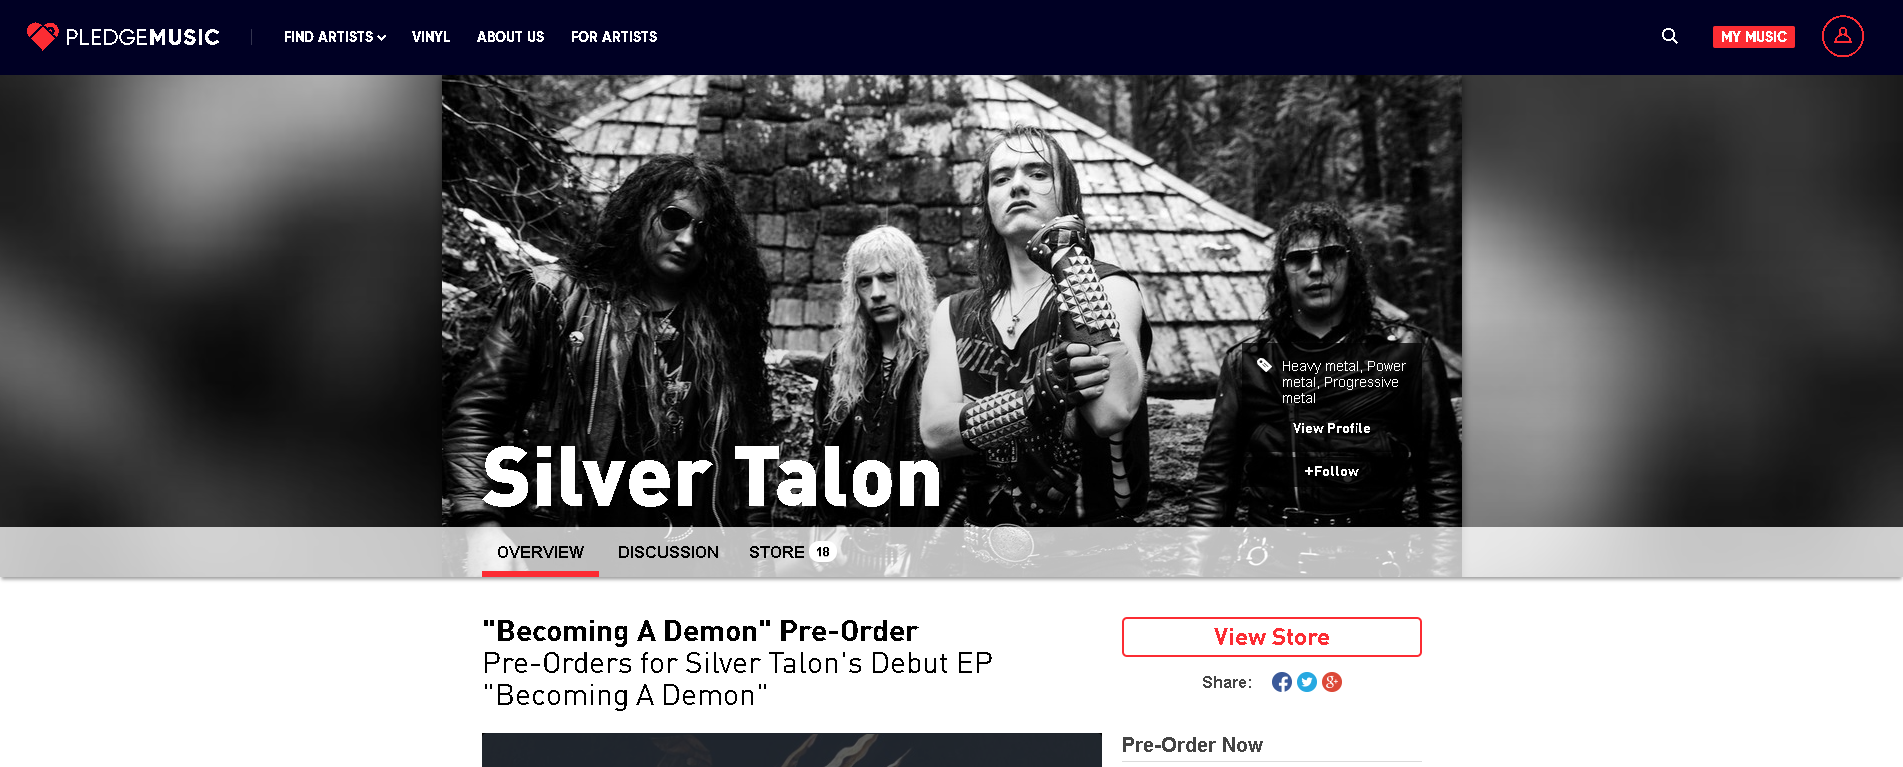 Silver Talon Pledge Music Store